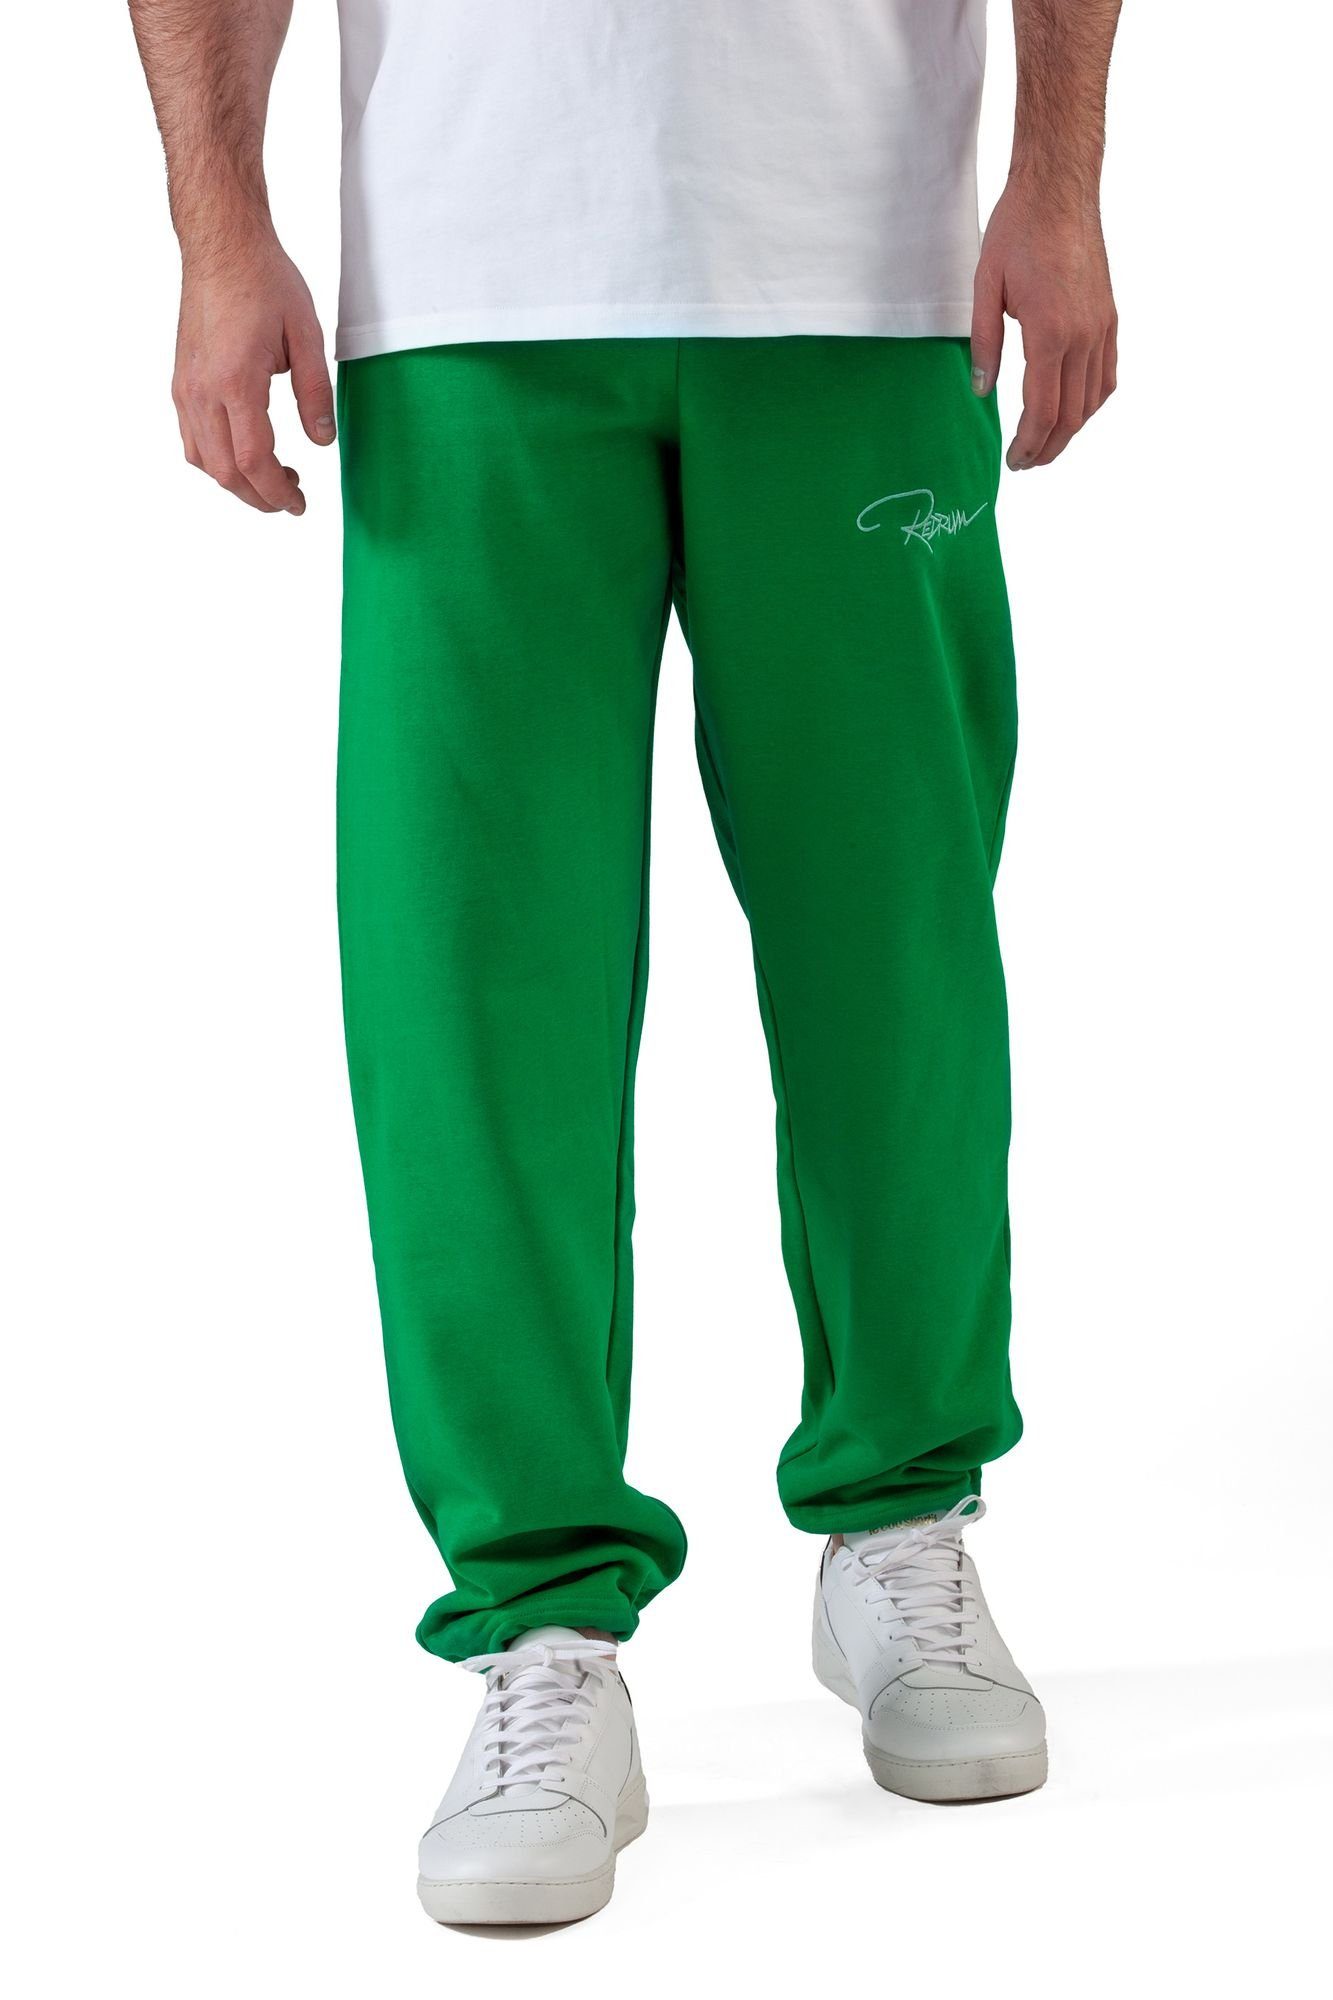 Pant Sweatpant Fitness Jogginghose Redrum Green (S-7XL) Freizeit Trainingshose Plant Sporthose -